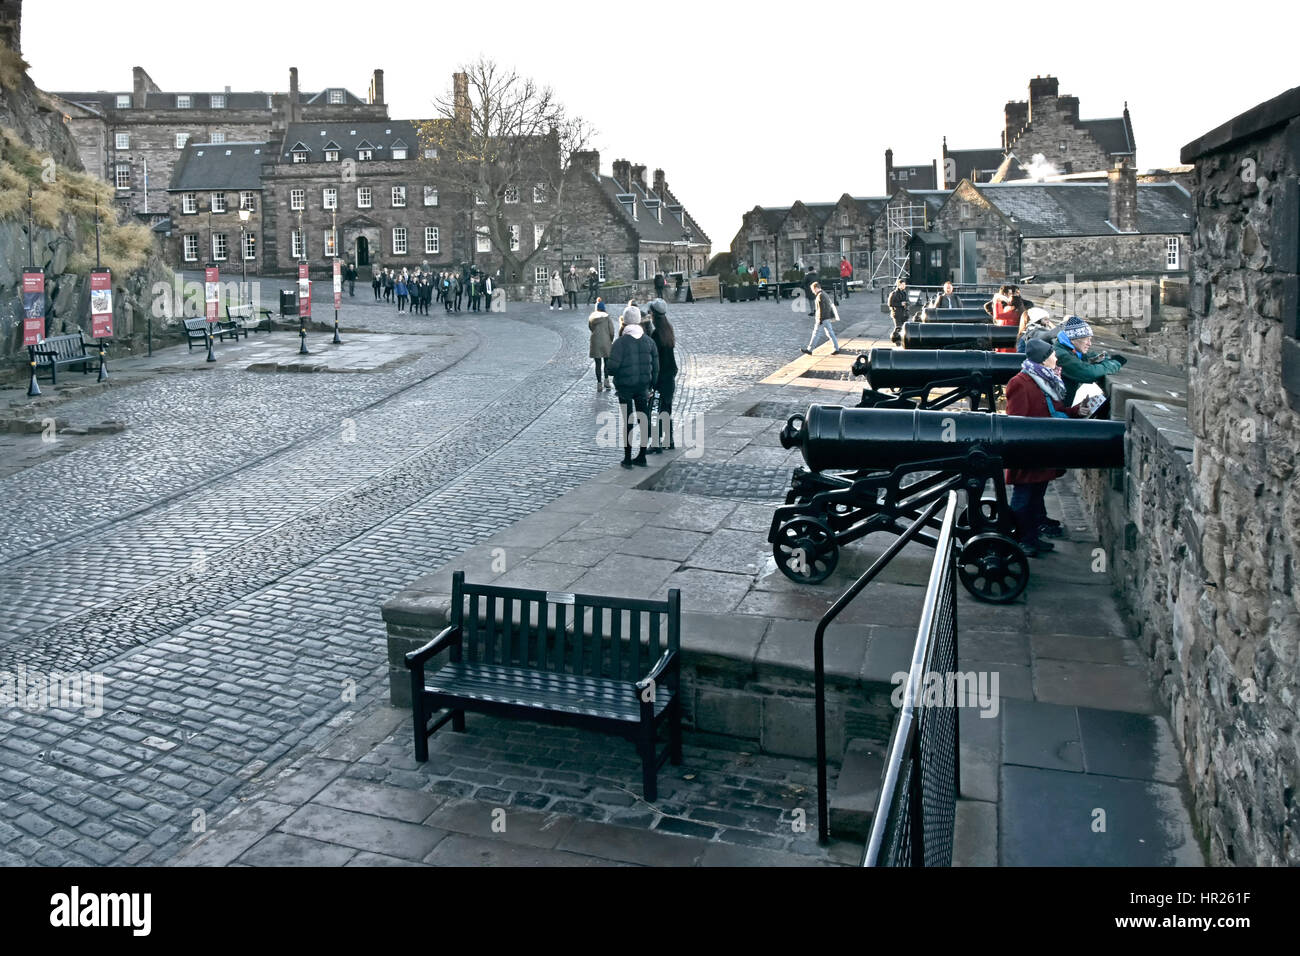 Gepflasterte Straße in Edinburgh Castle Besucher Touristen bewundern die Aussicht auf die Hauptstadt von der berühmten schottischen Burg an einem kalten Wintertag Stockfoto